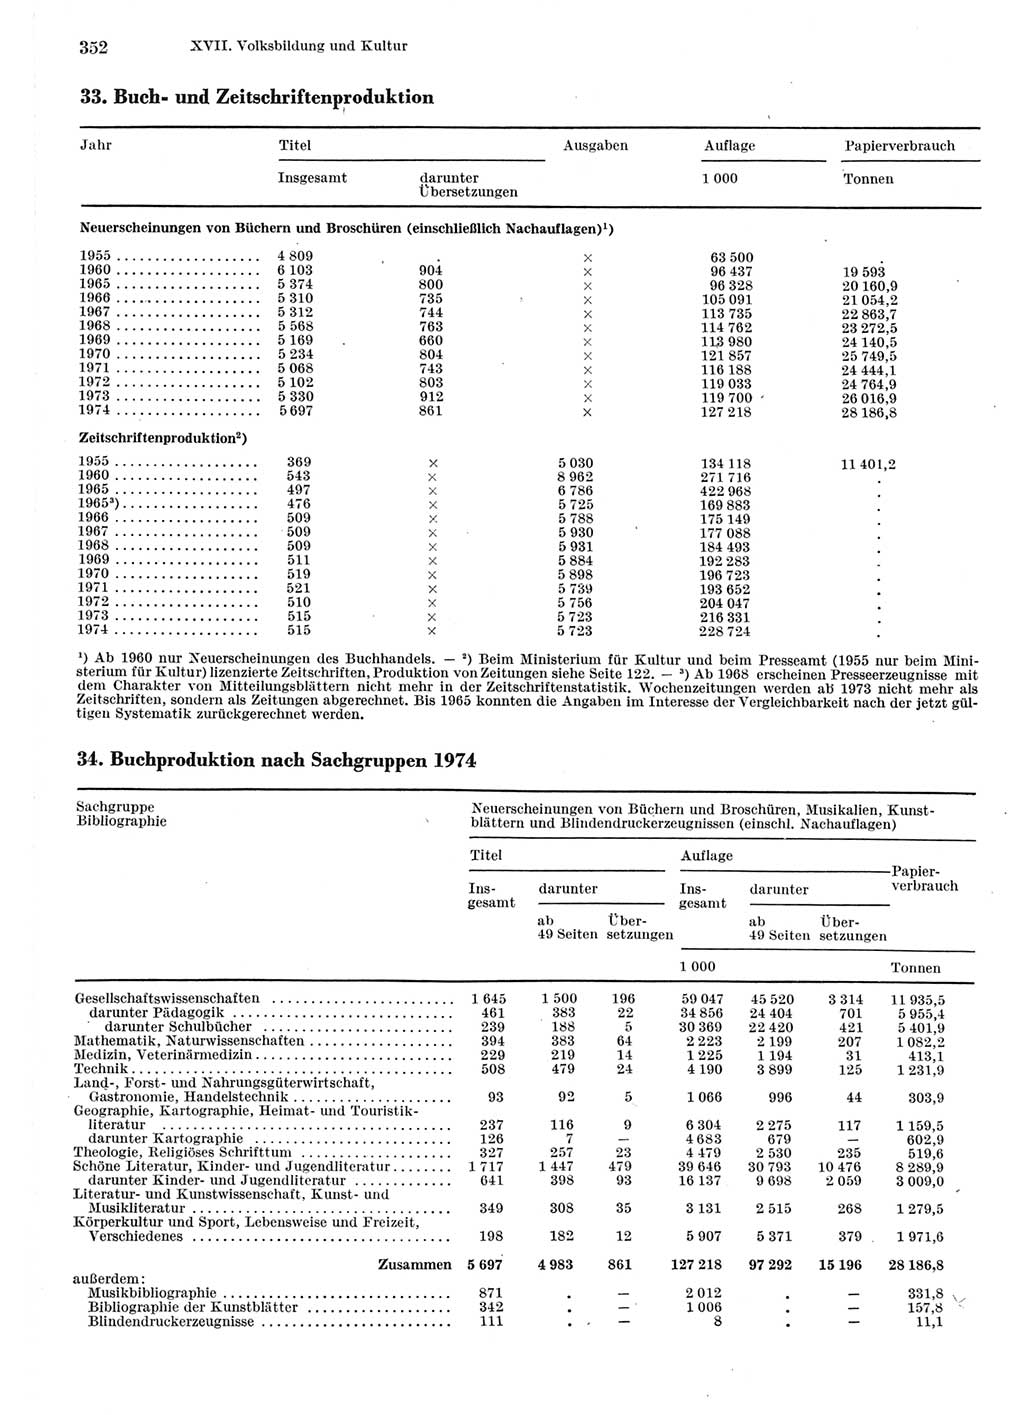 Statistisches Jahrbuch der Deutschen Demokratischen Republik (DDR) 1975, Seite 352 (Stat. Jb. DDR 1975, S. 352)